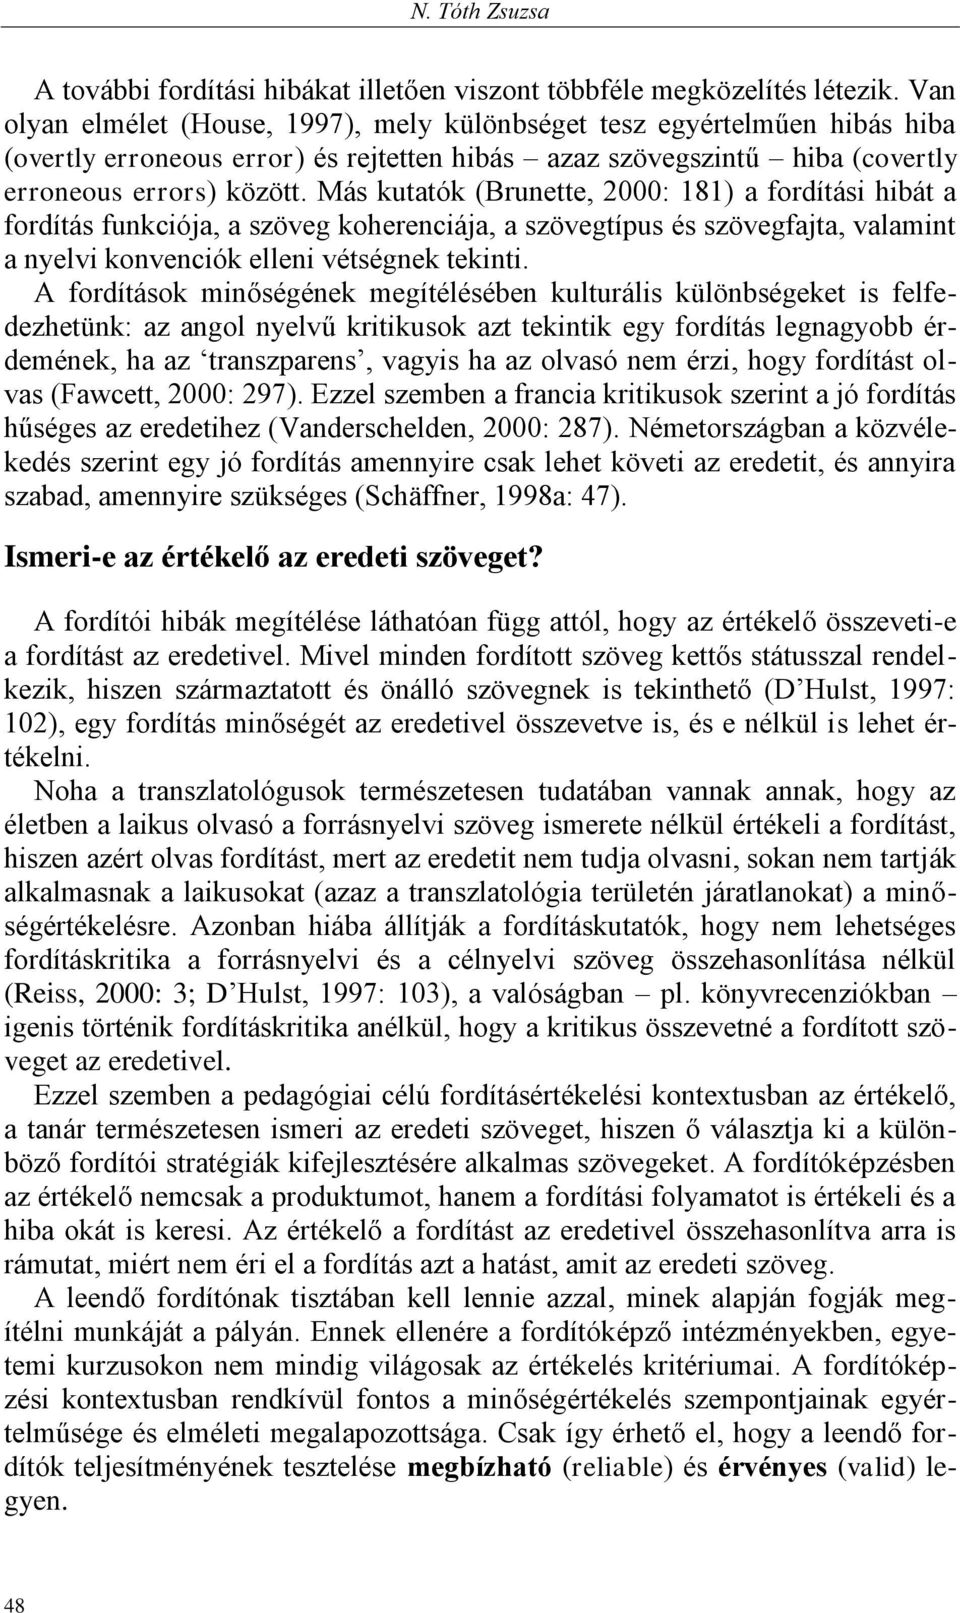 Más kutatók (Brunette, 2000: 181) a fordítási hibát a fordítás funkciója, a szöveg koherenciája, a szövegtípus és szövegfajta, valamint a nyelvi konvenciók elleni vétségnek tekinti.